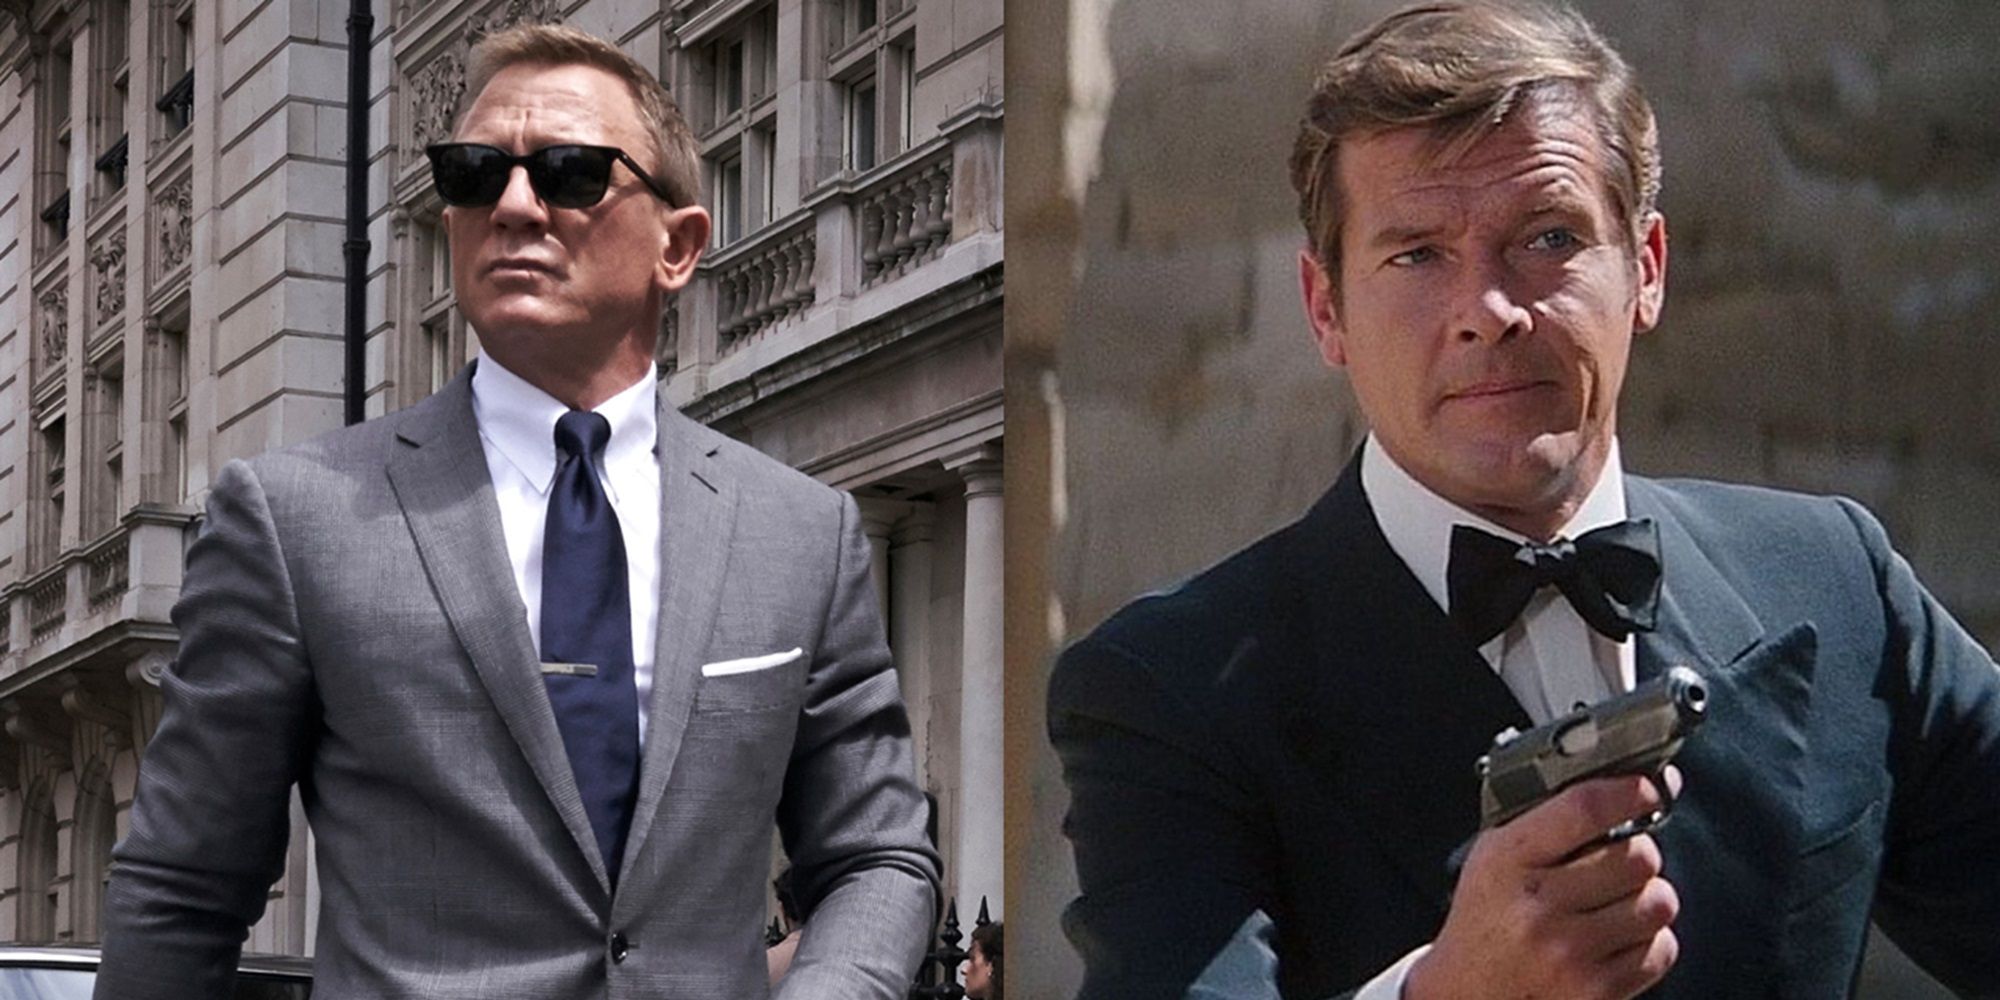 Bond-franchisen seuraavan inkarnaation pitäisi saada inspiraatiota Roger Mooren aikakaudesta